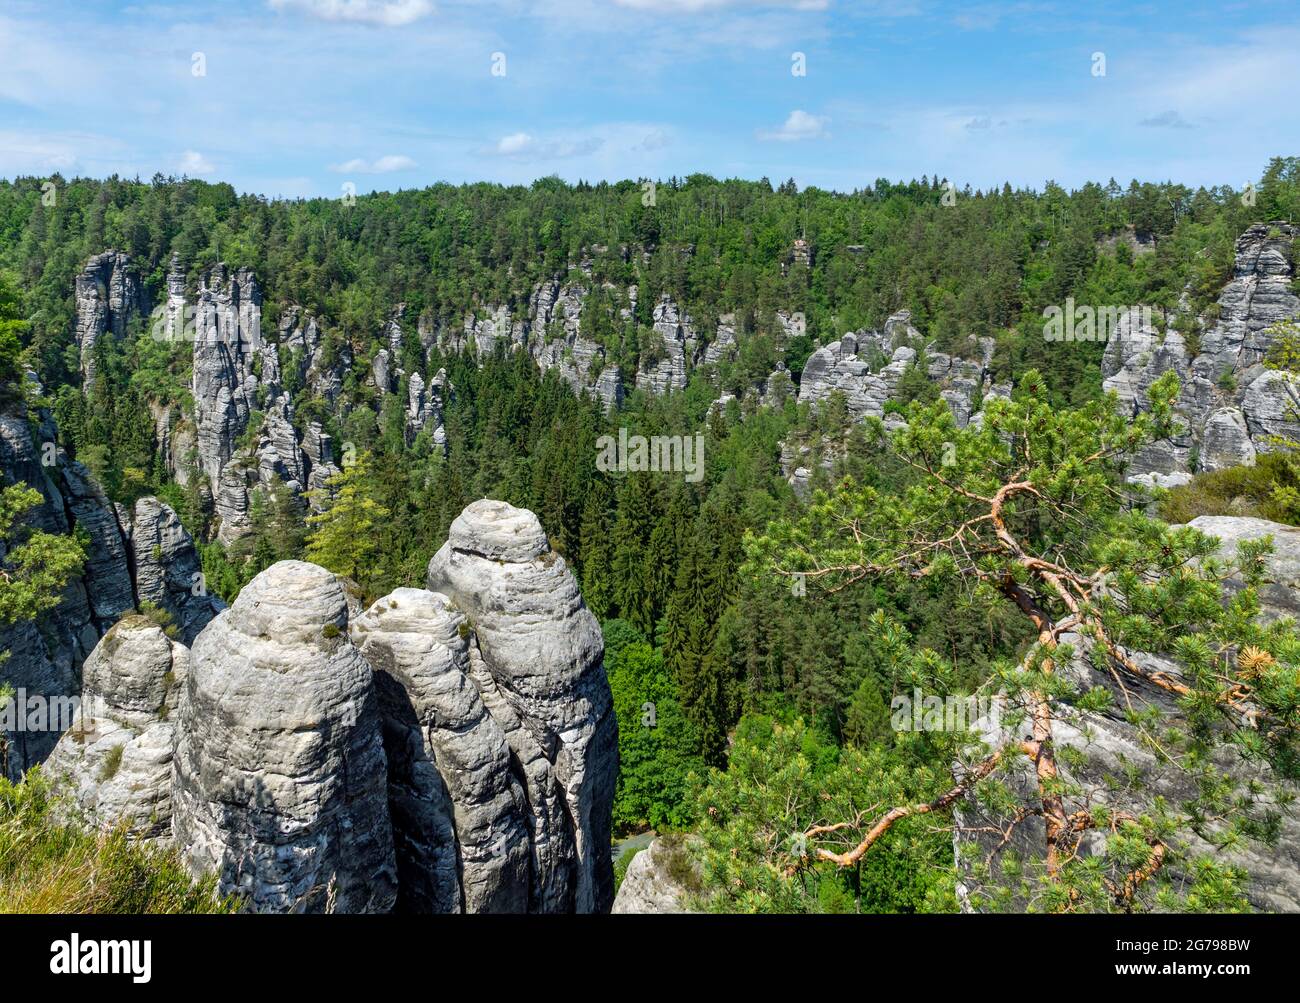 El Bastei es una formación rocosa con una plataforma de observación en la Suiza sajona en la orilla derecha del Elba en la zona del municipio de Lohmen. Es una de las atracciones turísticas más populares de la Suiza sajona. Foto de stock